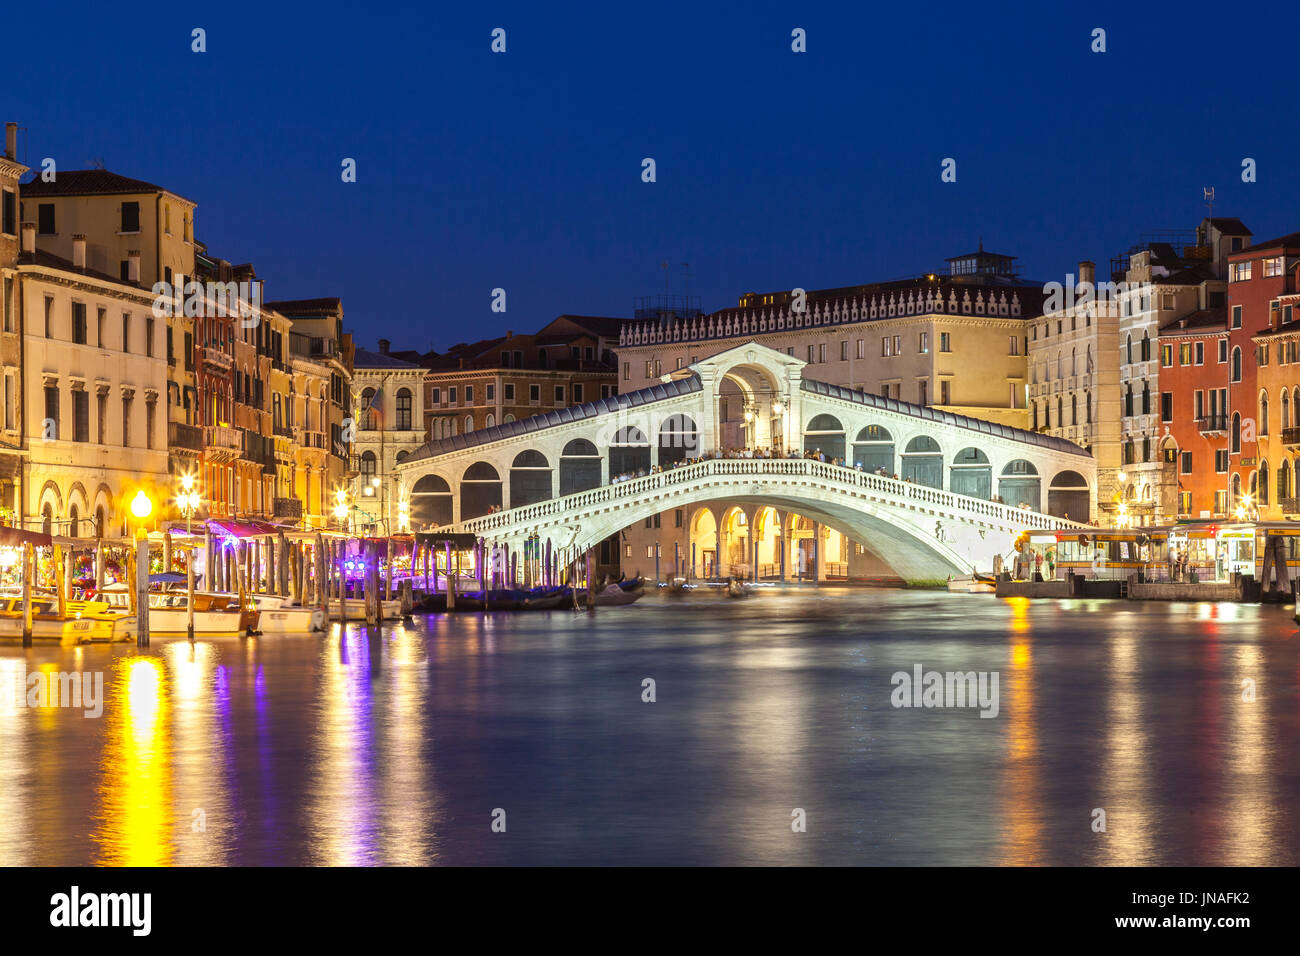 Venedig, Veneto, Italien Blick auf die Rialto-Brücke während der blauen Stunde mit Reflexionen auf dem Wasser und beleuchteten Pilazzos. Blick auf Langzeitbelichtung mit moti Stockfoto